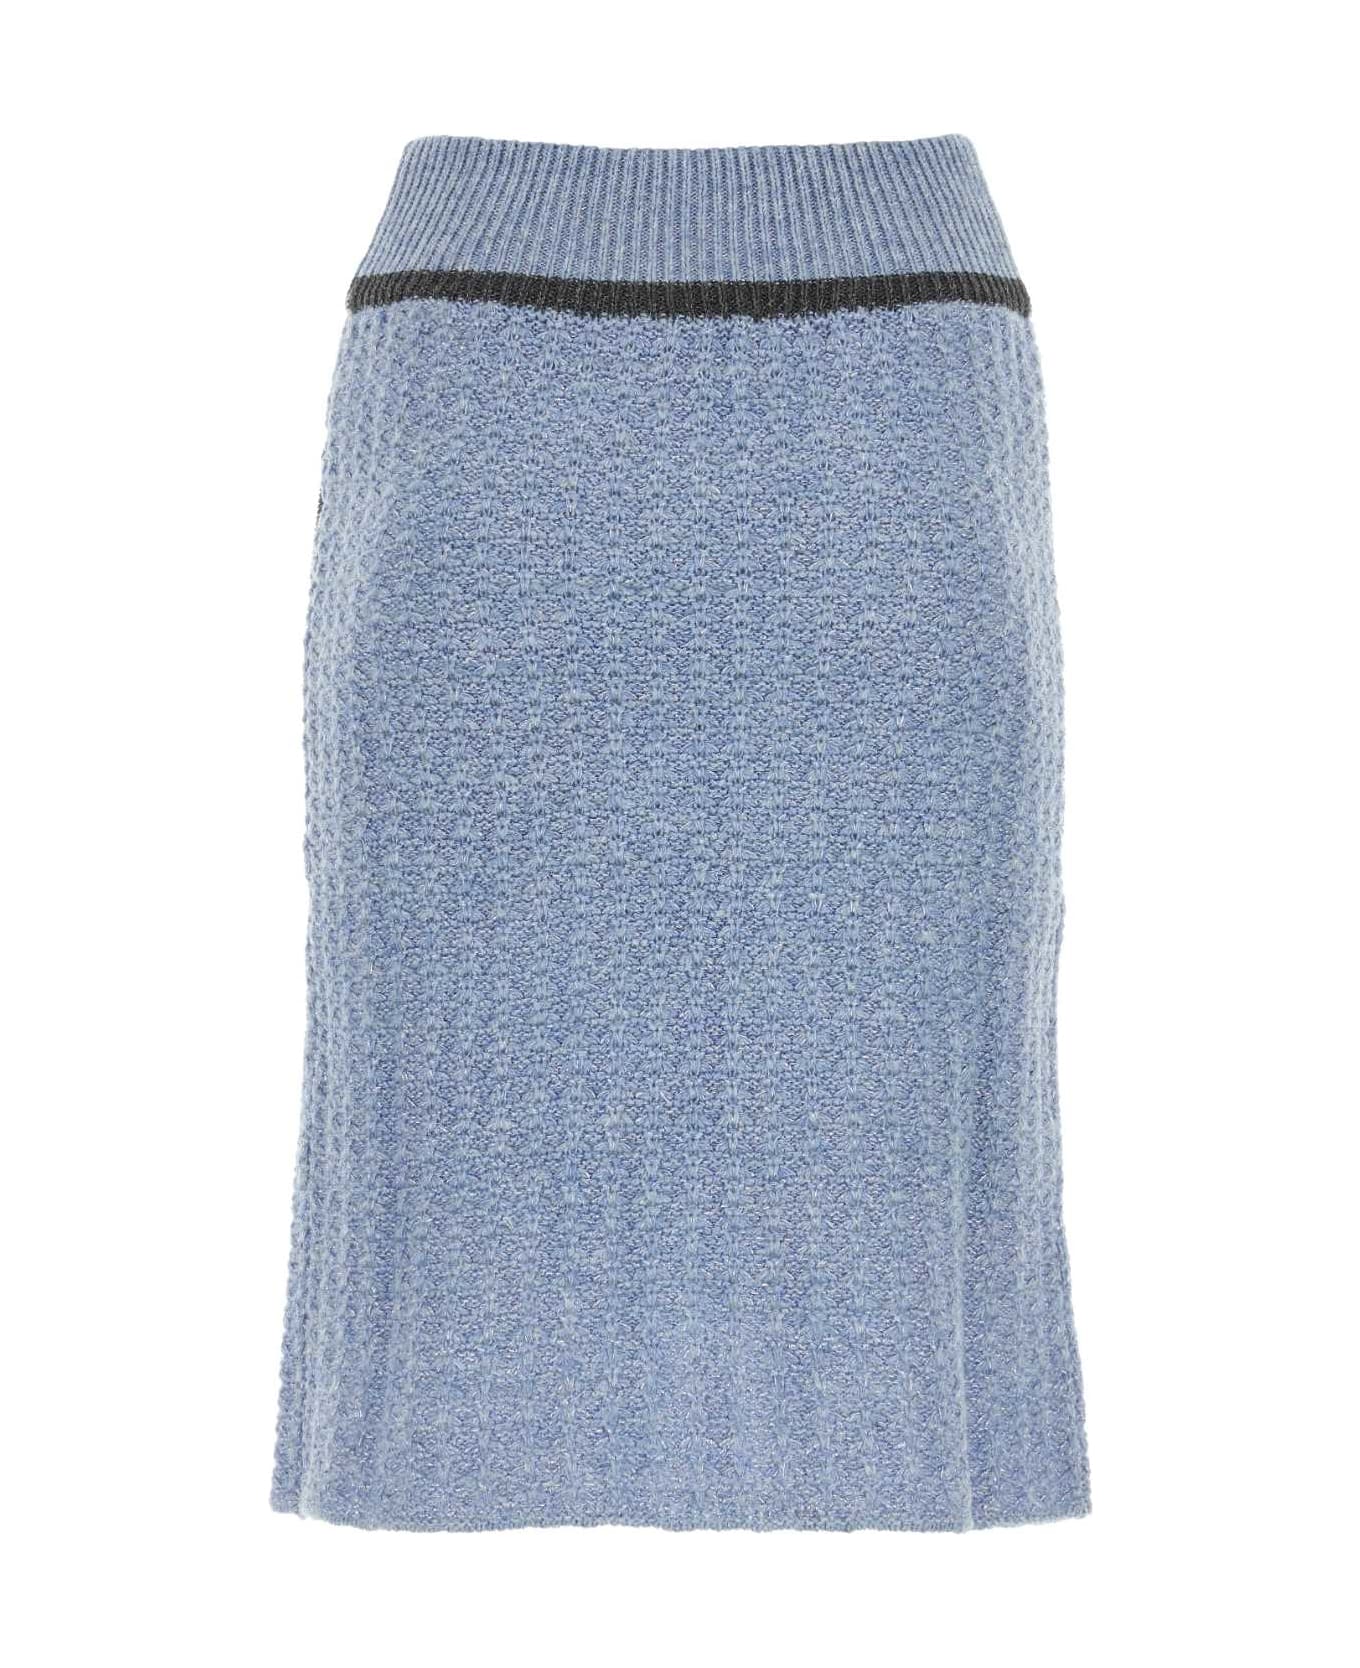 Cormio Cerulean Wool Blend Skirt - BLUEPERVINCA